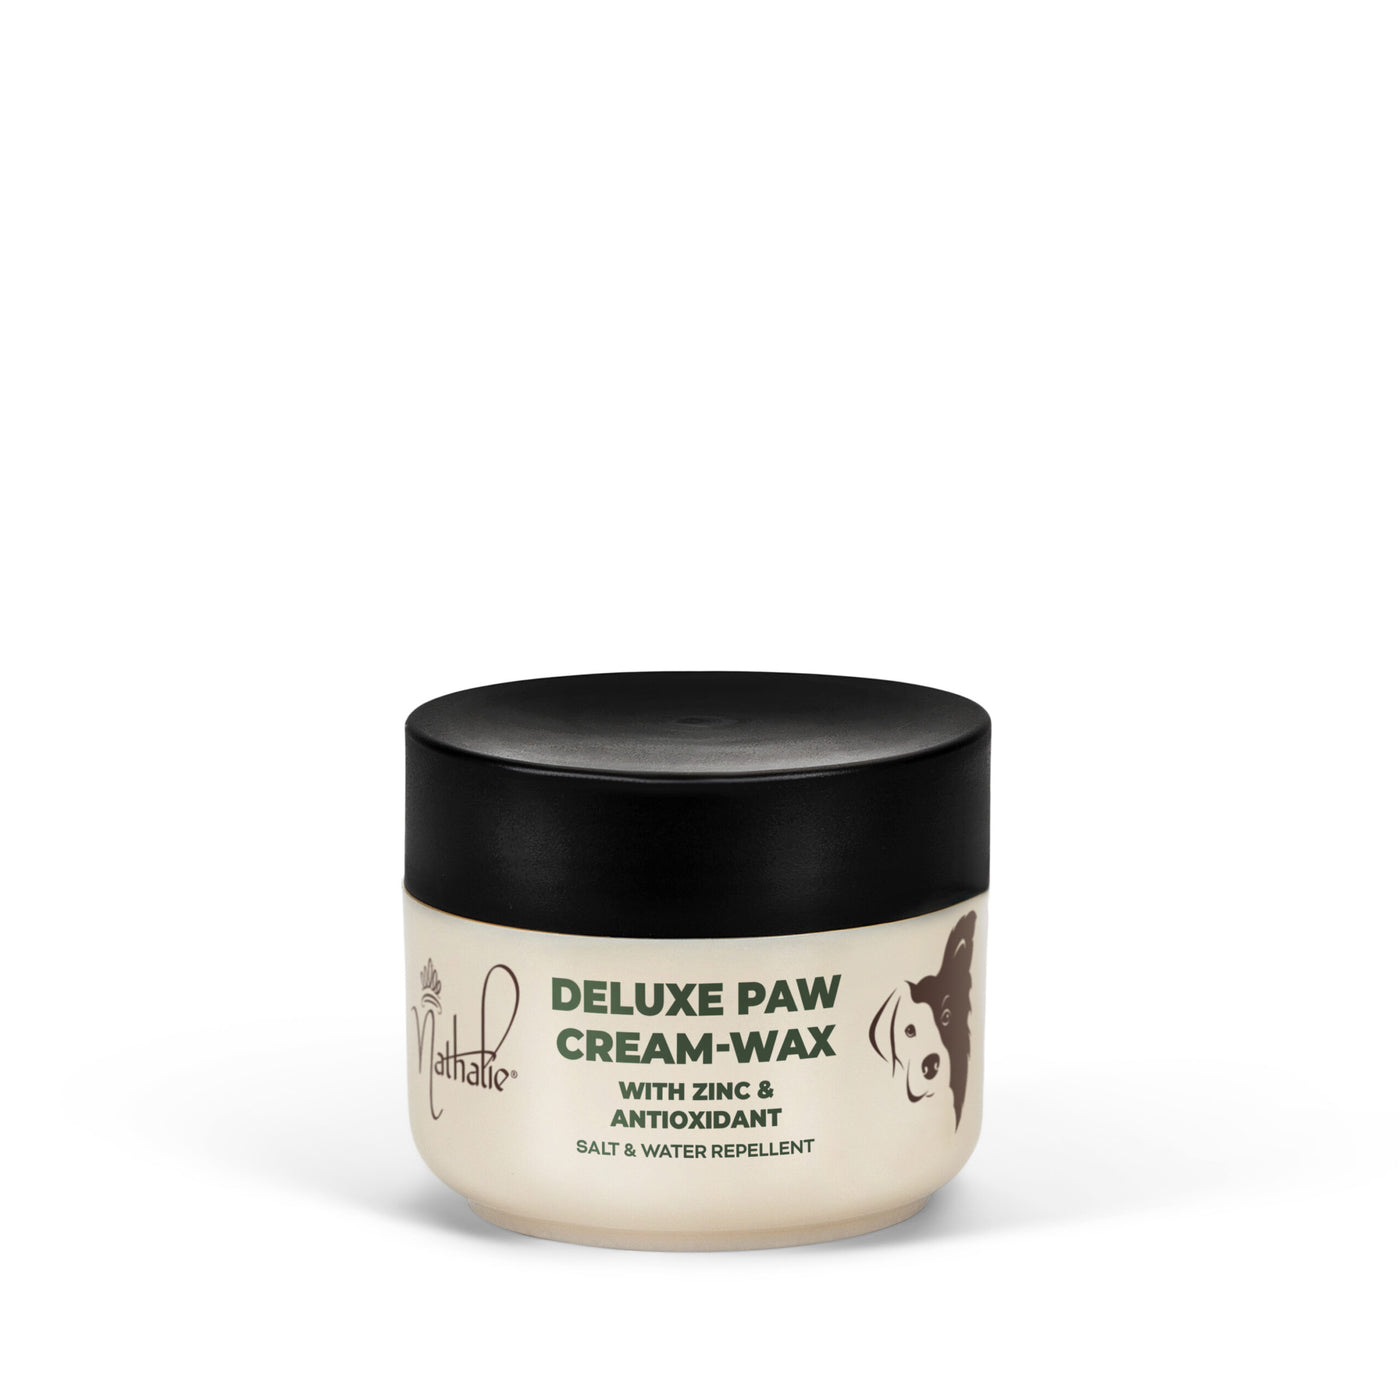 Deluxe Paw Cream-Wax